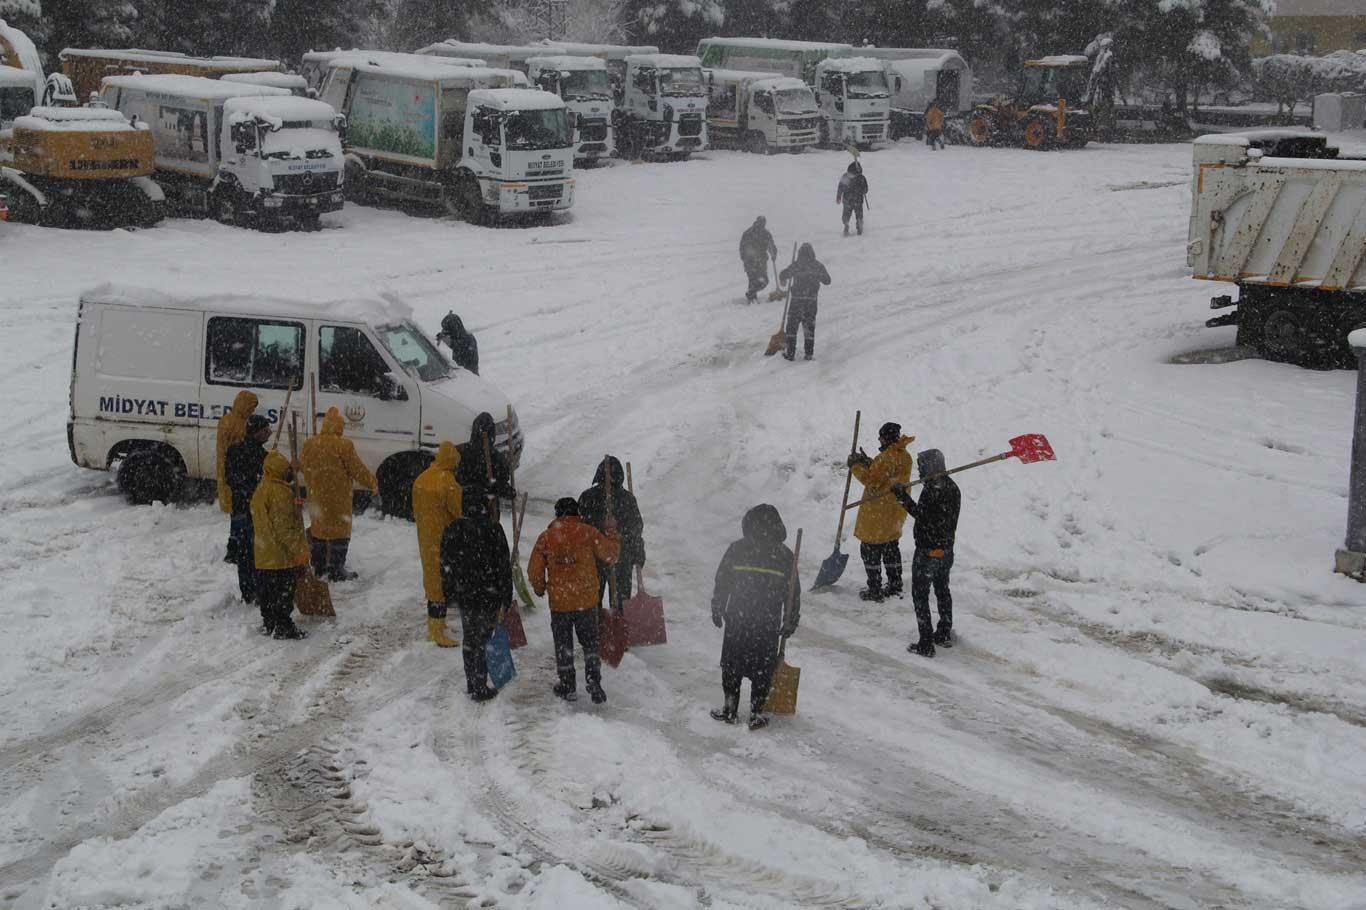 Midyat'ta karla mücadele aralıksız olarak sürüyor